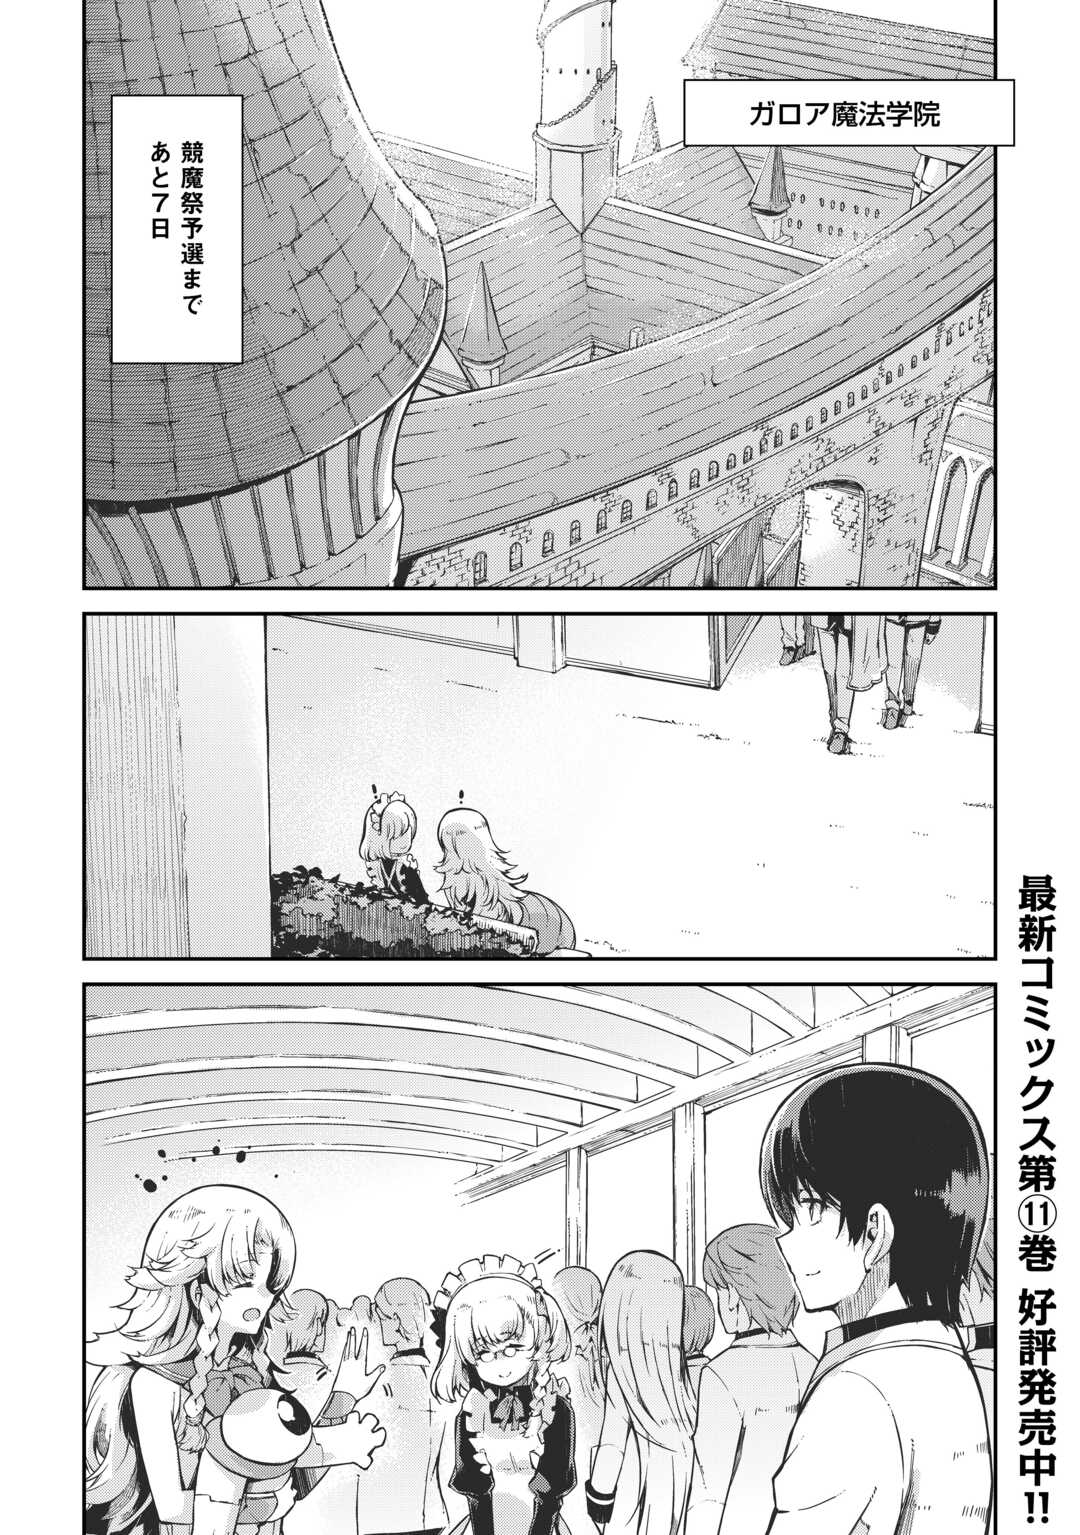 Sayounara Ryuusei, Konnichiwa Jinsei - Chapter 86 - Page 1